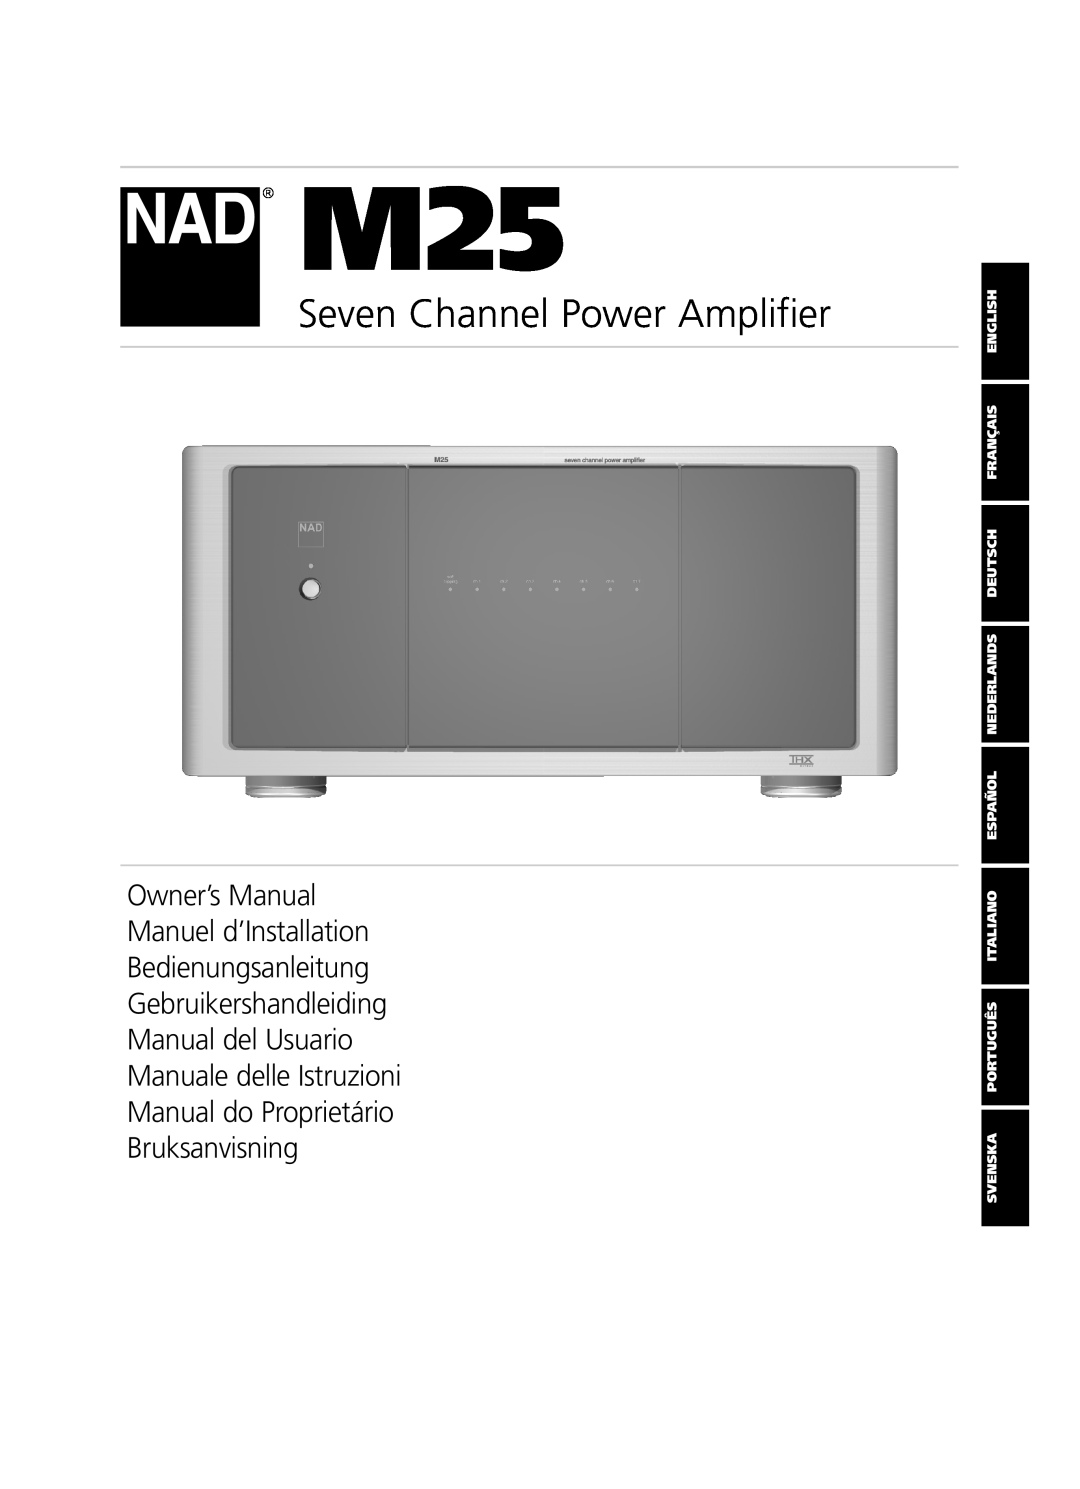 NAD M25 owner manual Seven Channel Power Amplifier, Bedienungsanleitung Gebruikershandleiding 